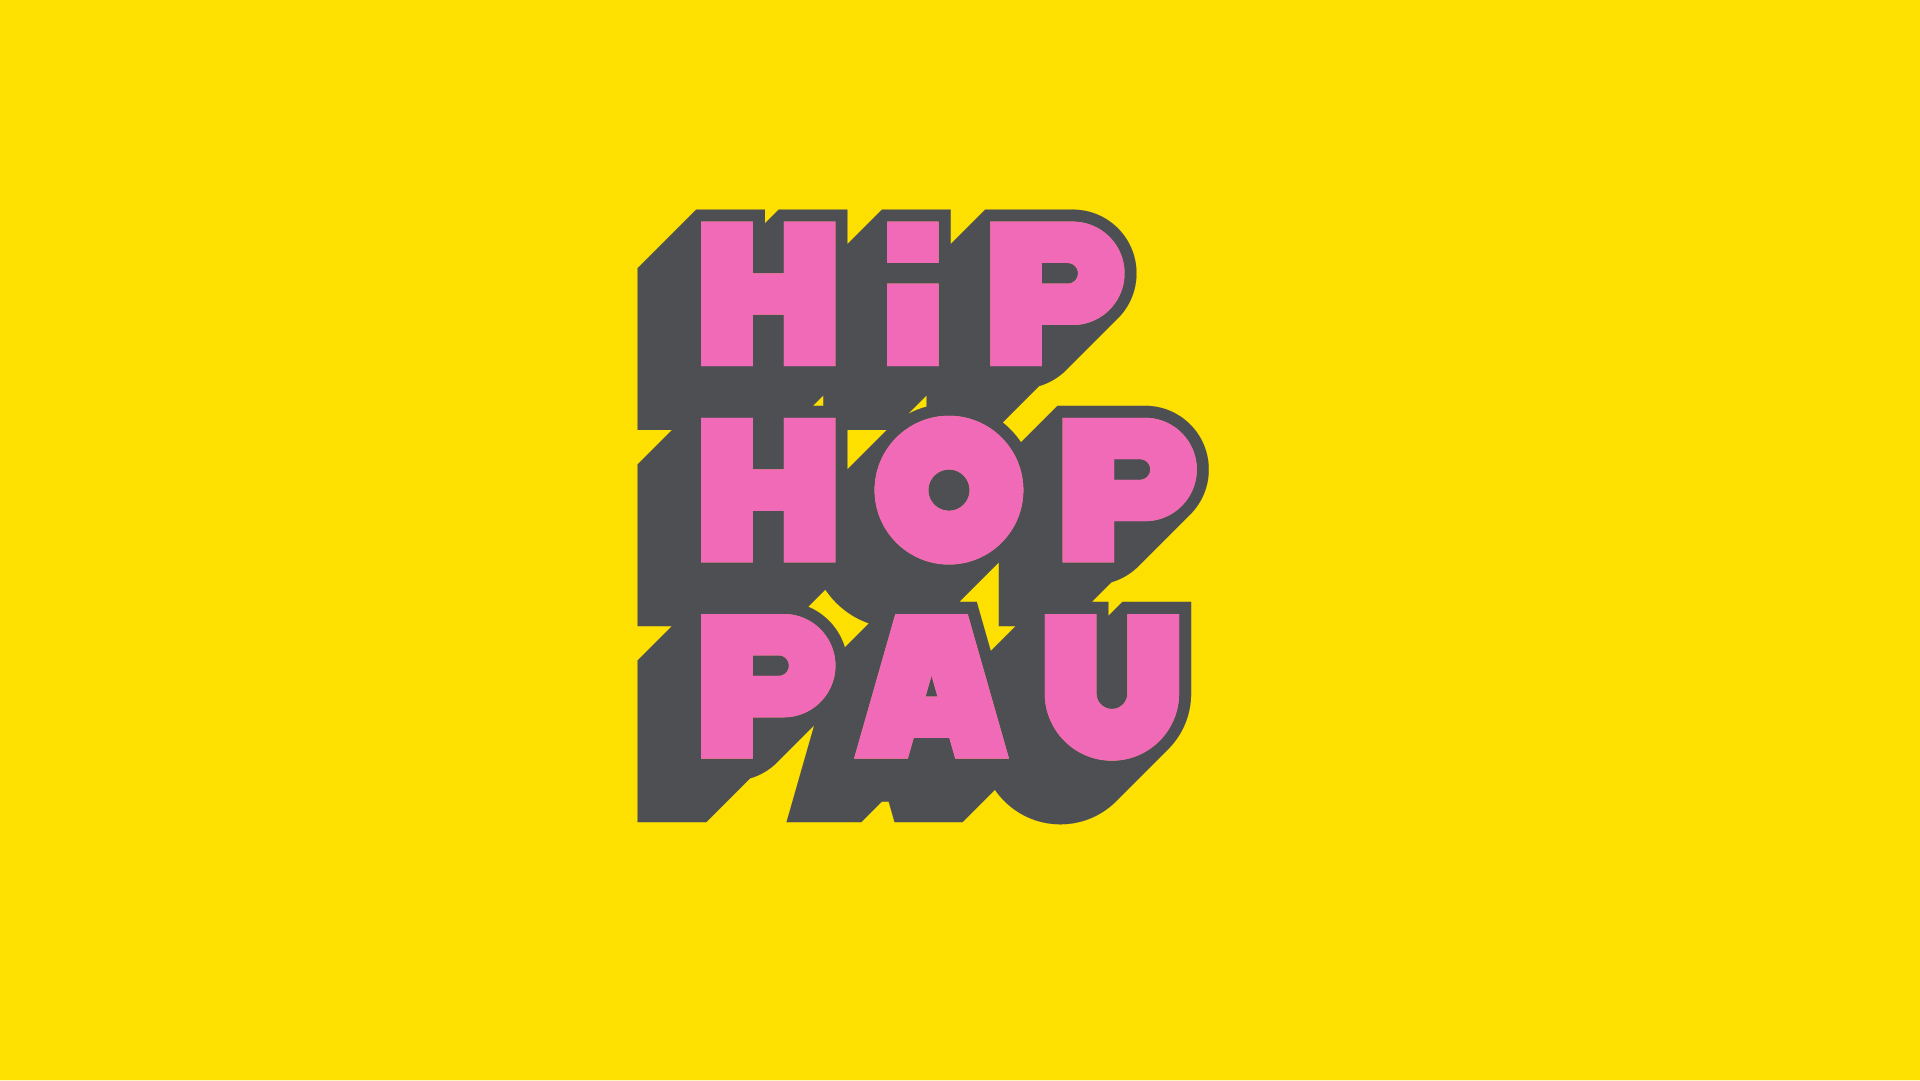 Els clips guanyadors del 7è concurs #HipHopPau reivindiquen la igualtat, l’esperit crític i l’acció per transformar injustícies